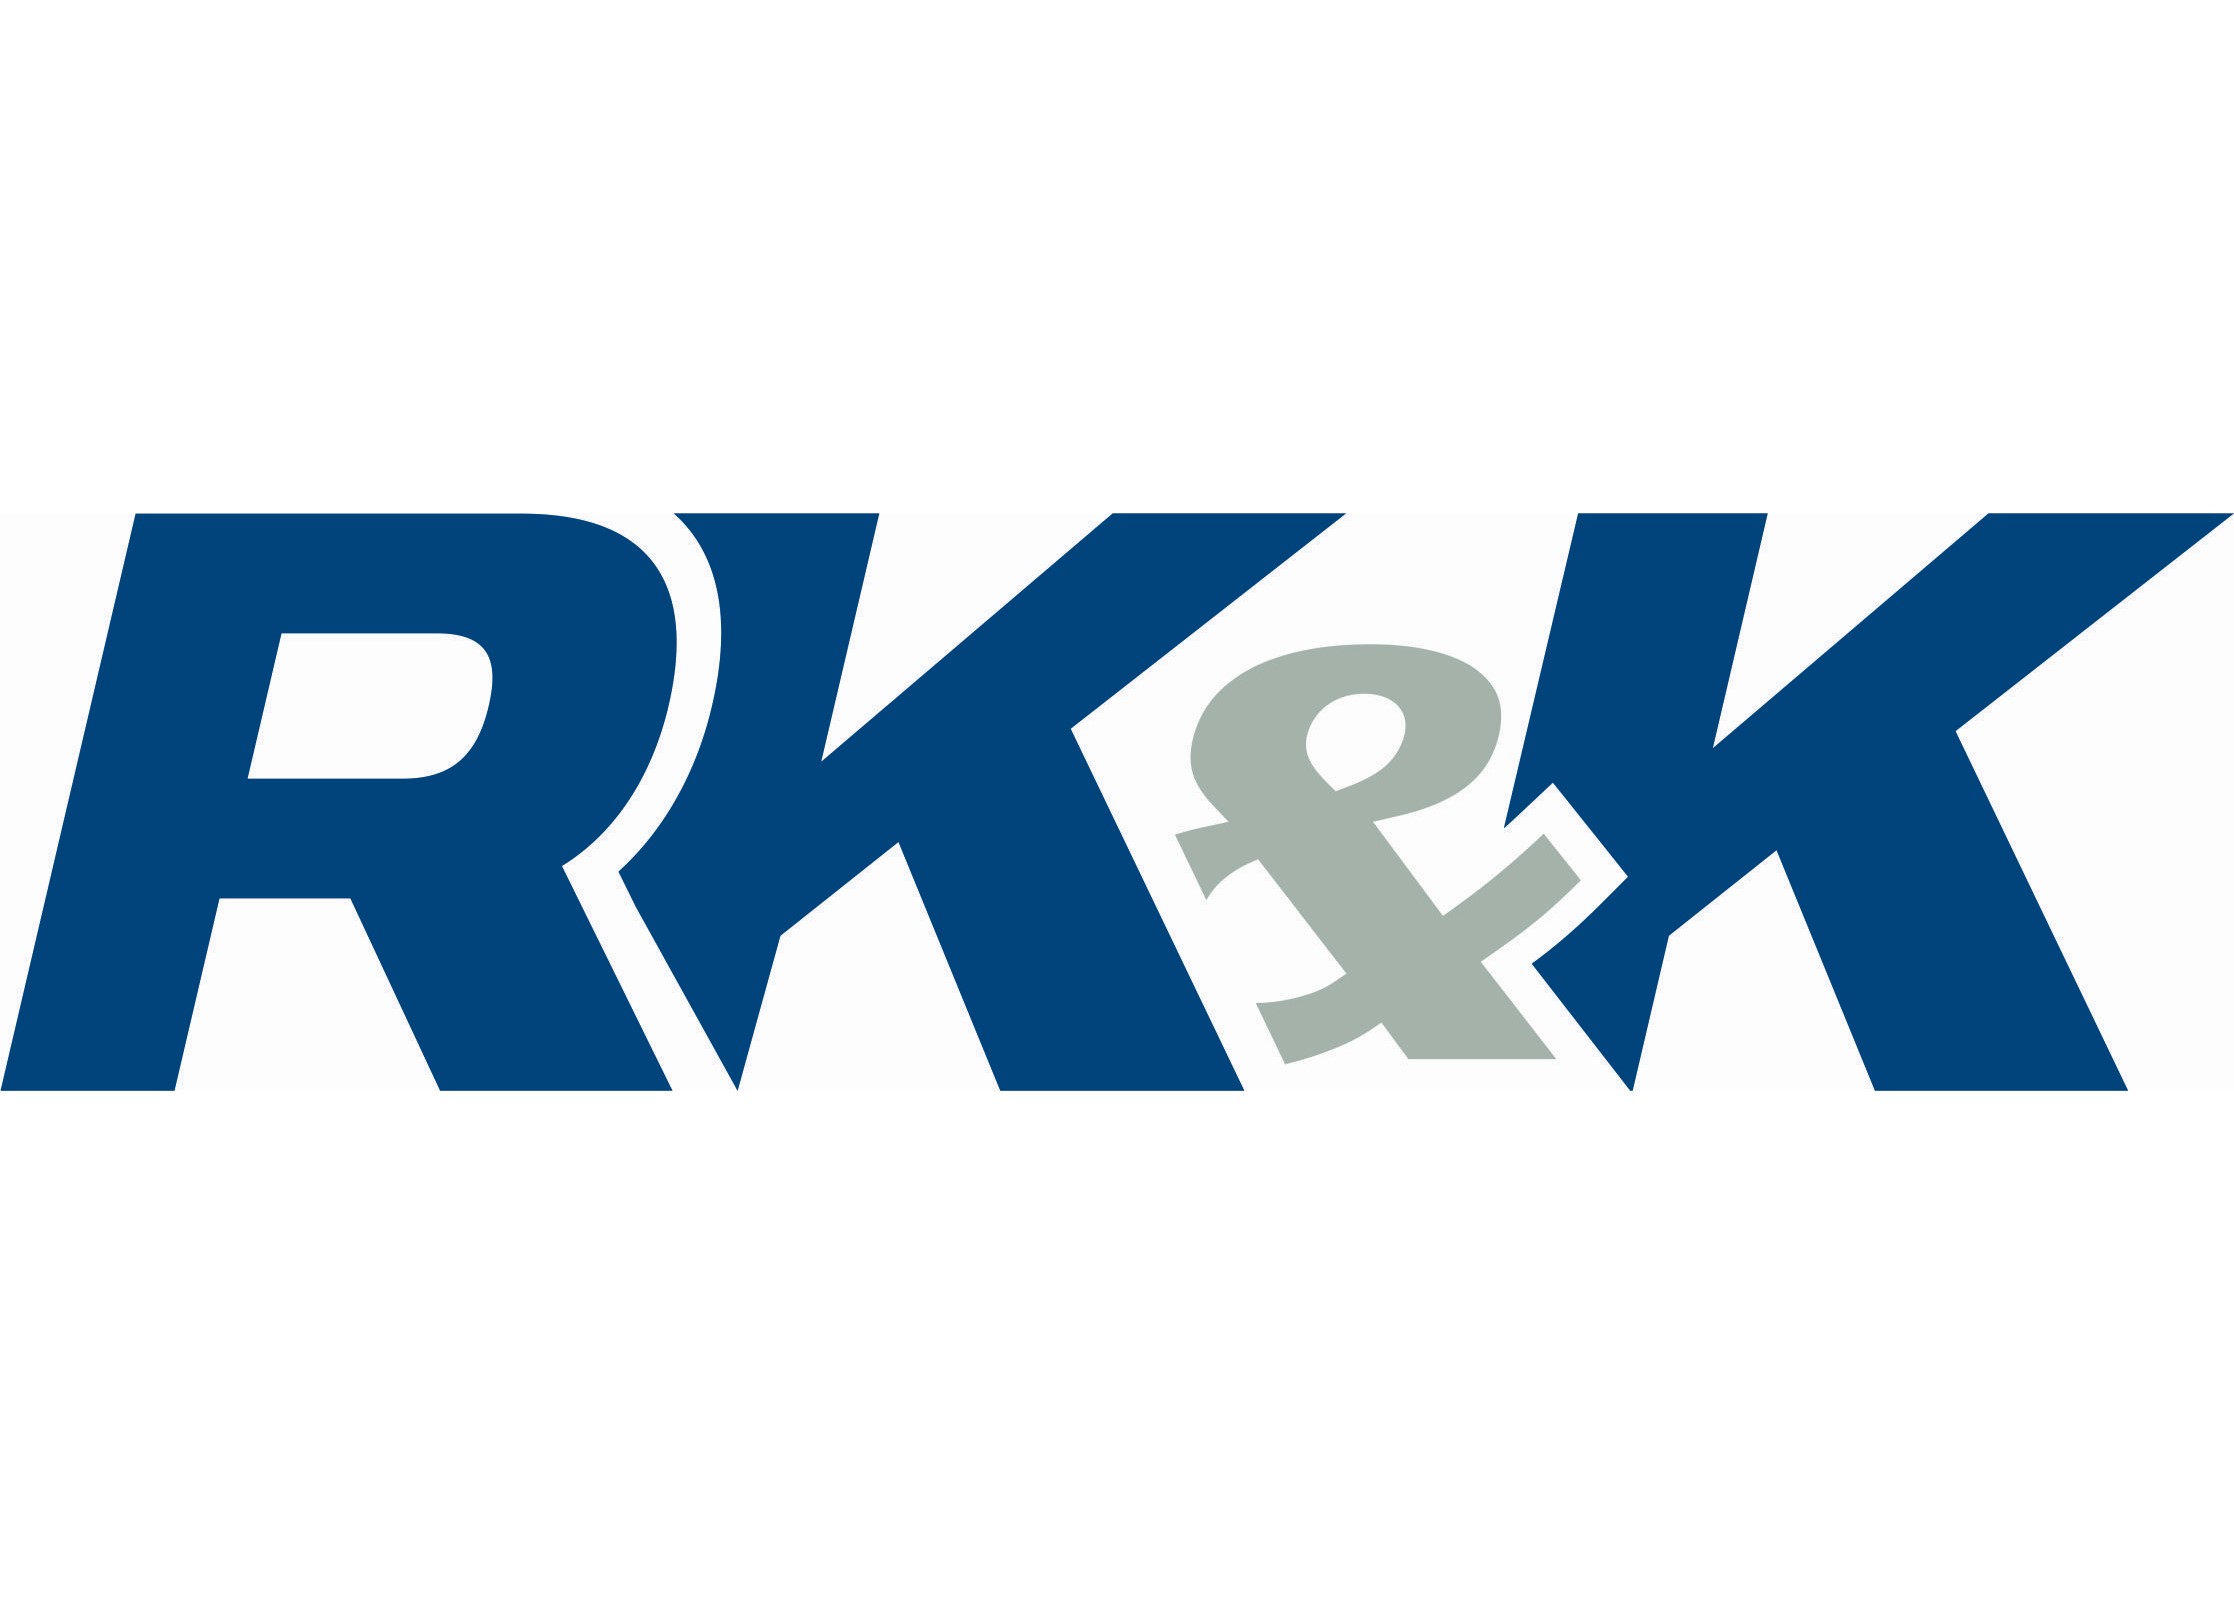 RK&K